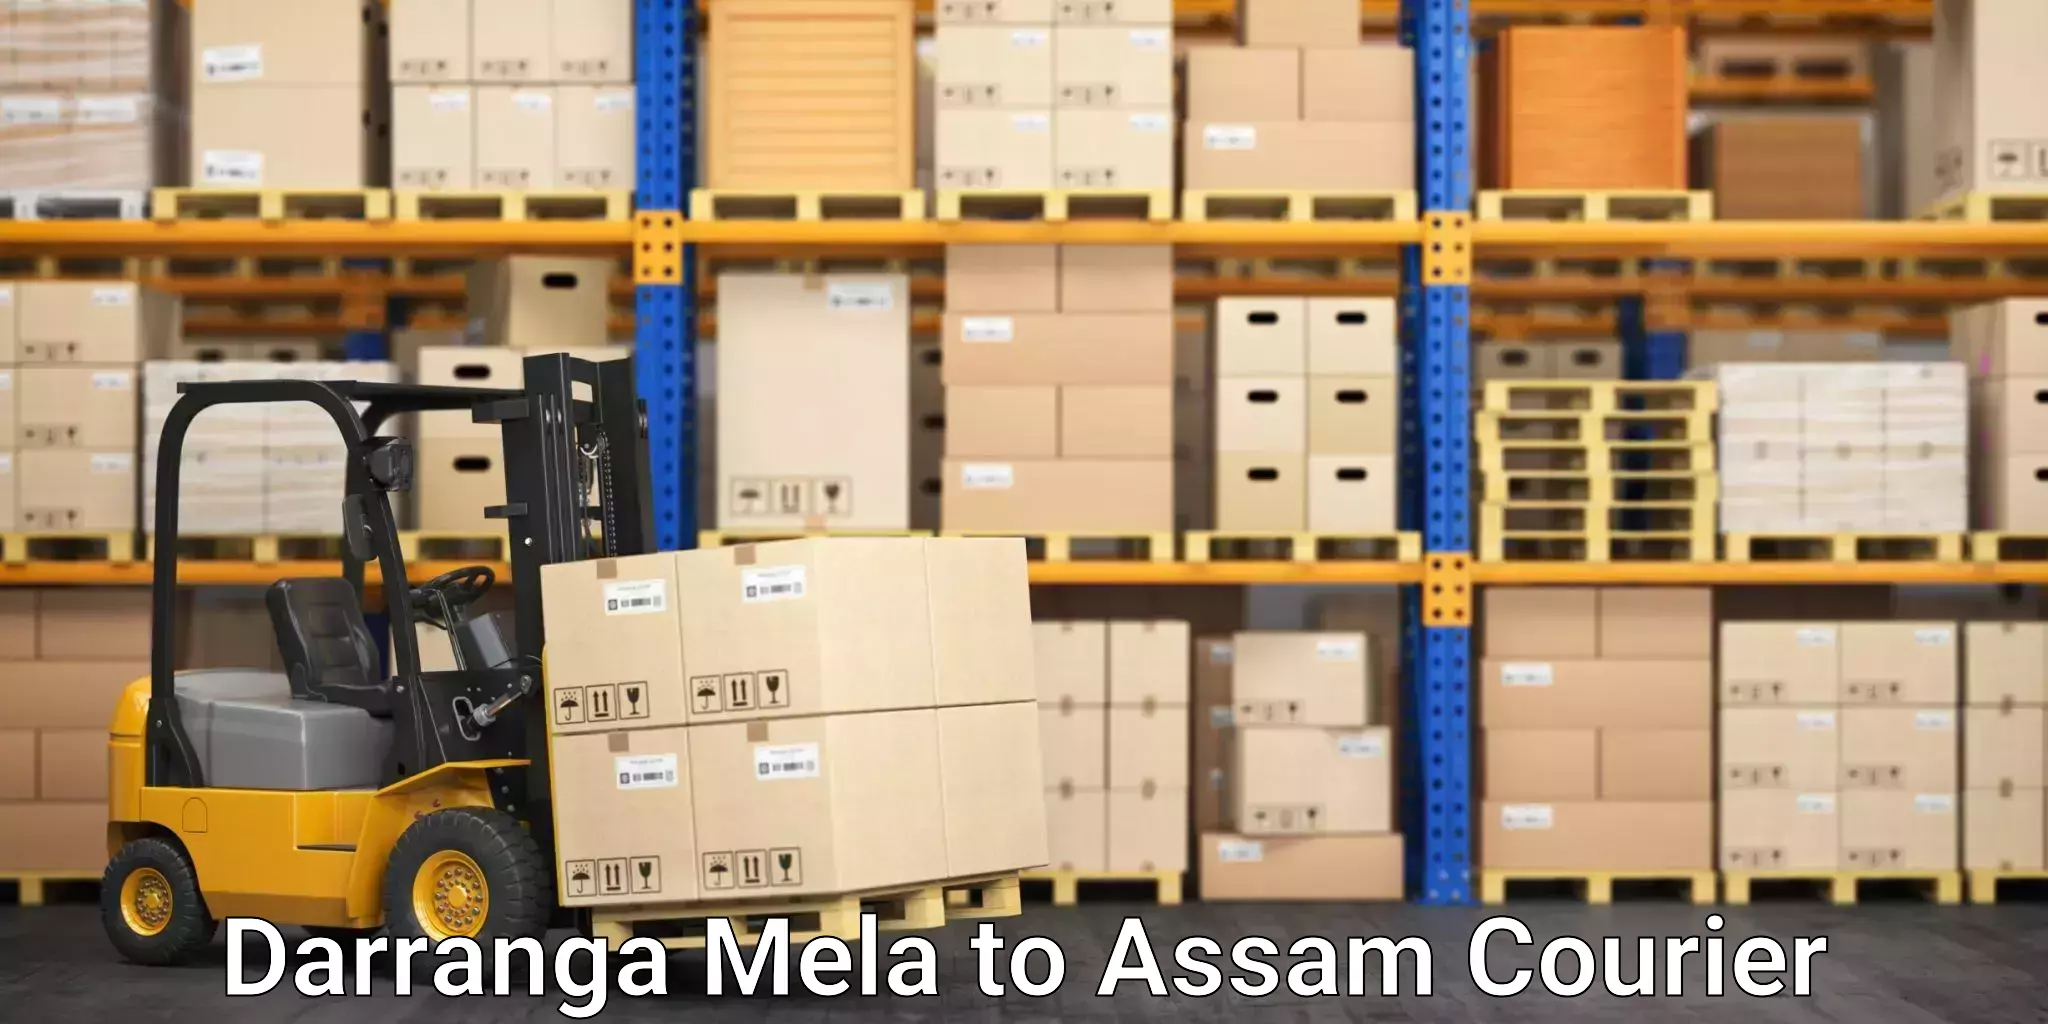 High-efficiency logistics Darranga Mela to Goalpara